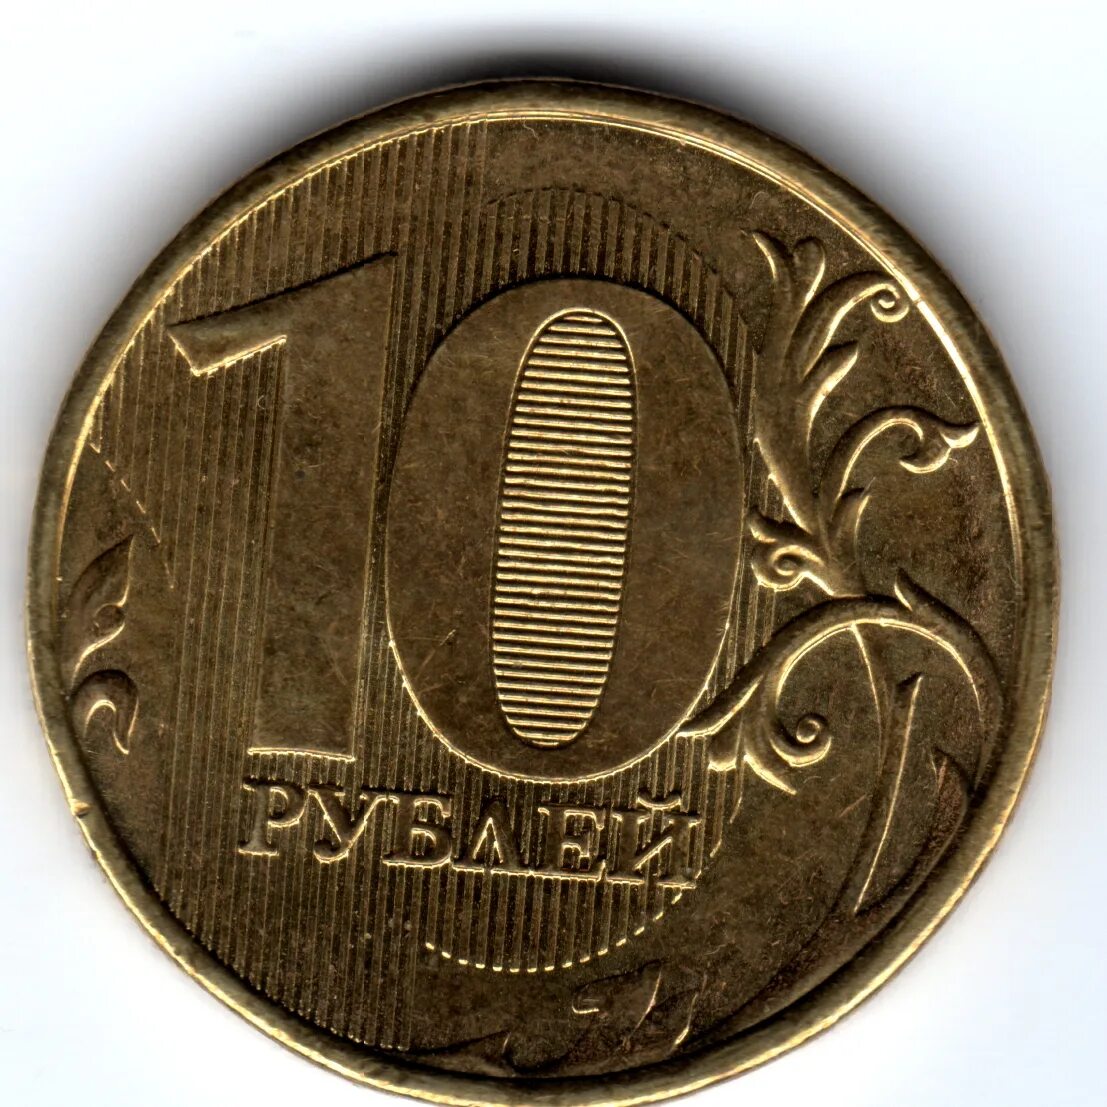 10 рублей в сумах